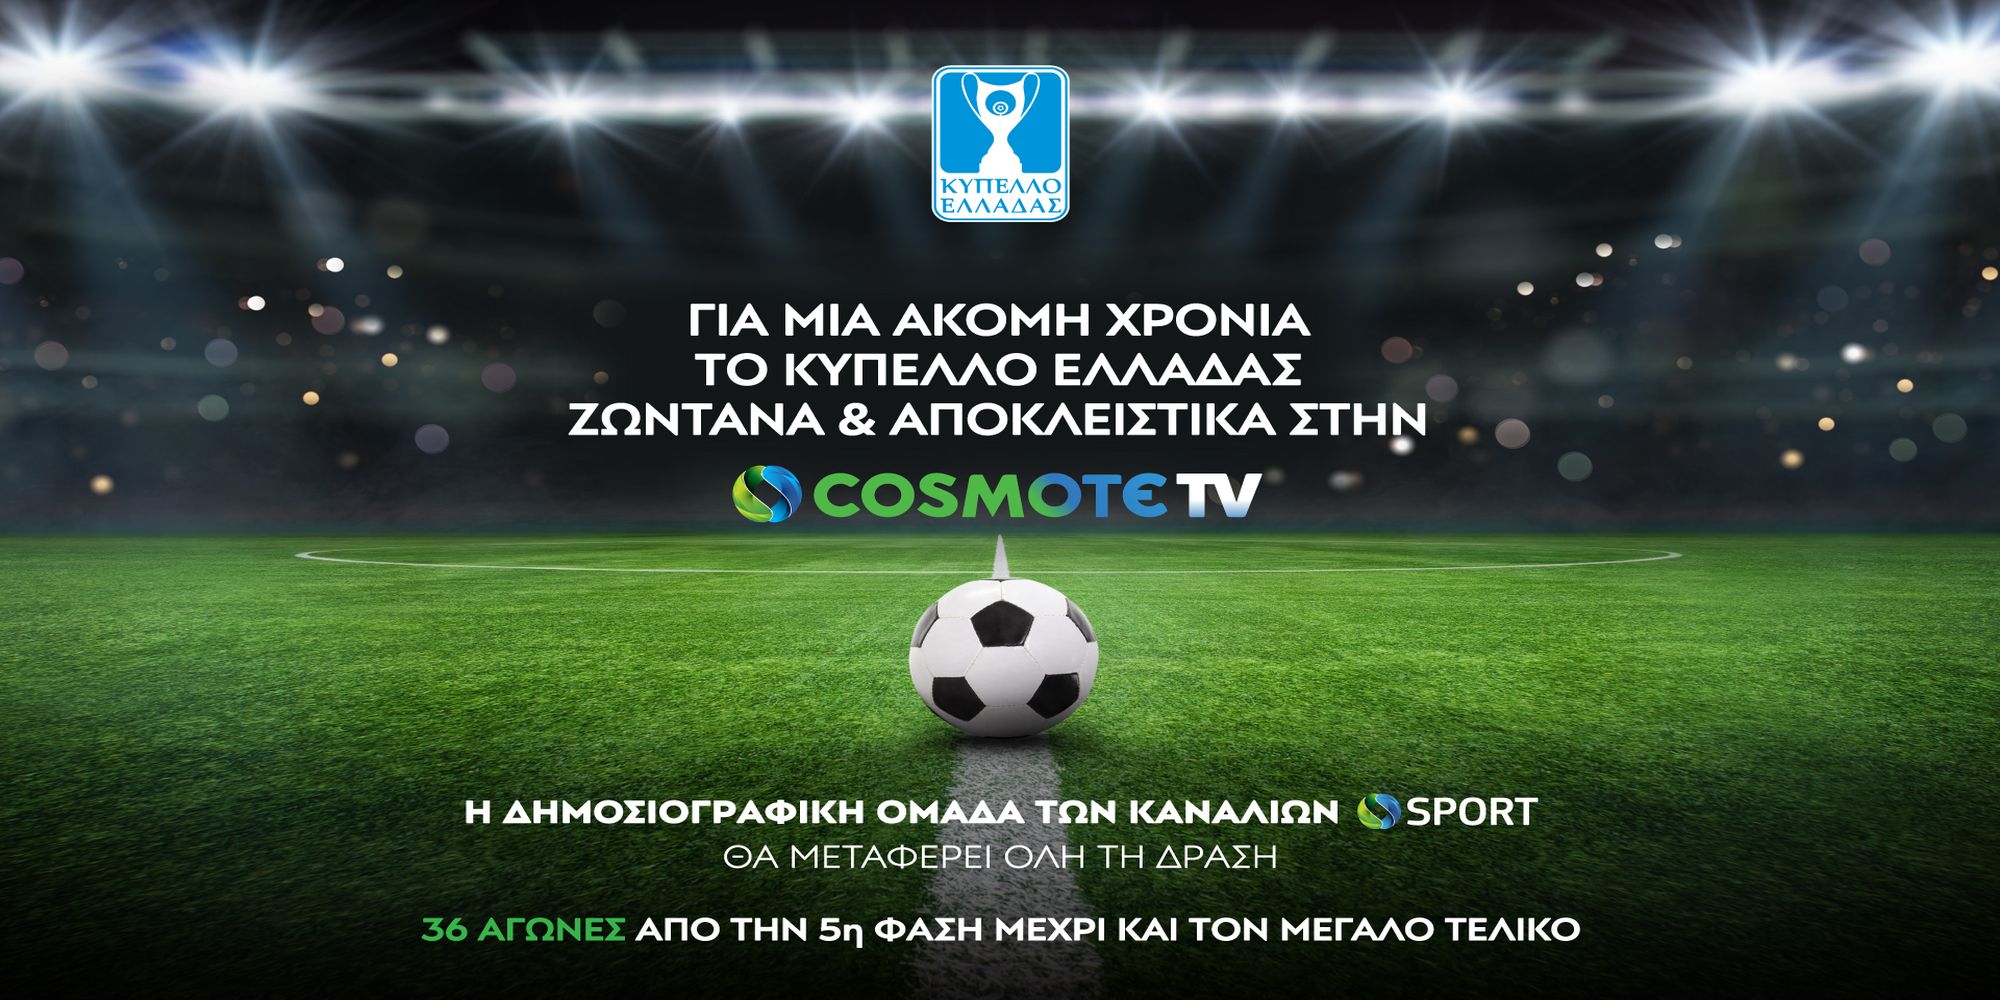 Κύπελλο Ελλάδας: Για ακόμη μια χρονιά στην Cosmote TV - Το πρόγραμμα των μεταδόσεων